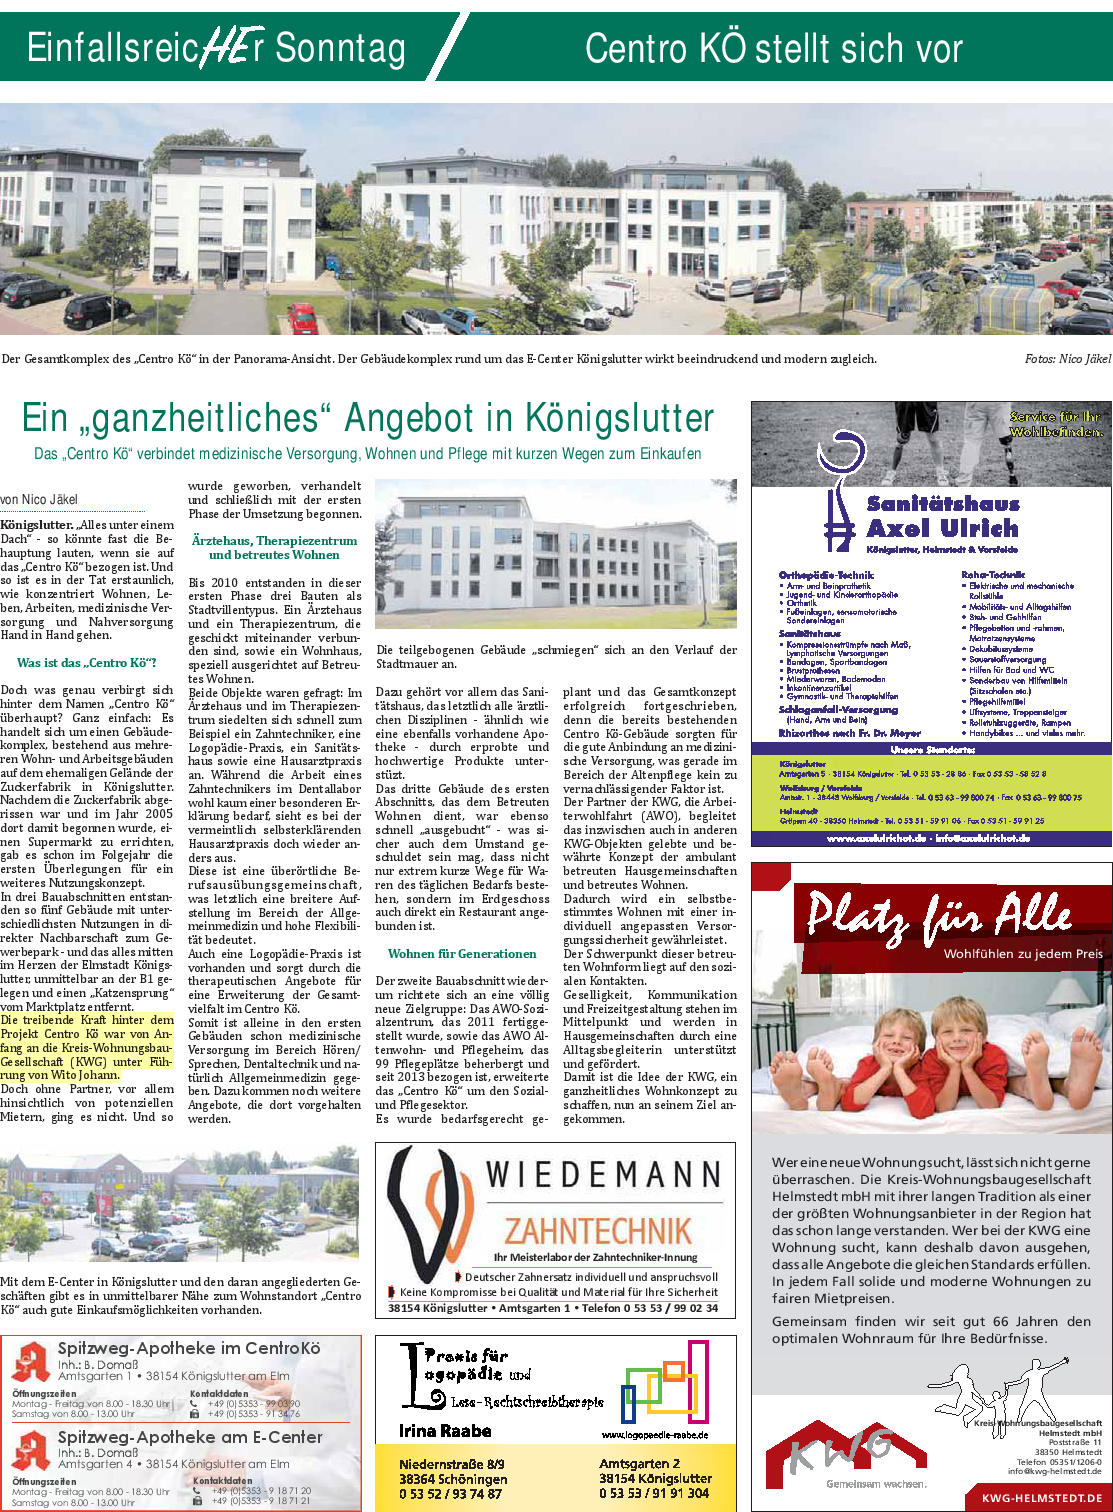 https://www.kwg-helmstedt.de/media/Königslutter_Centro_Kö_HE_Sonntag_28072019.jpg